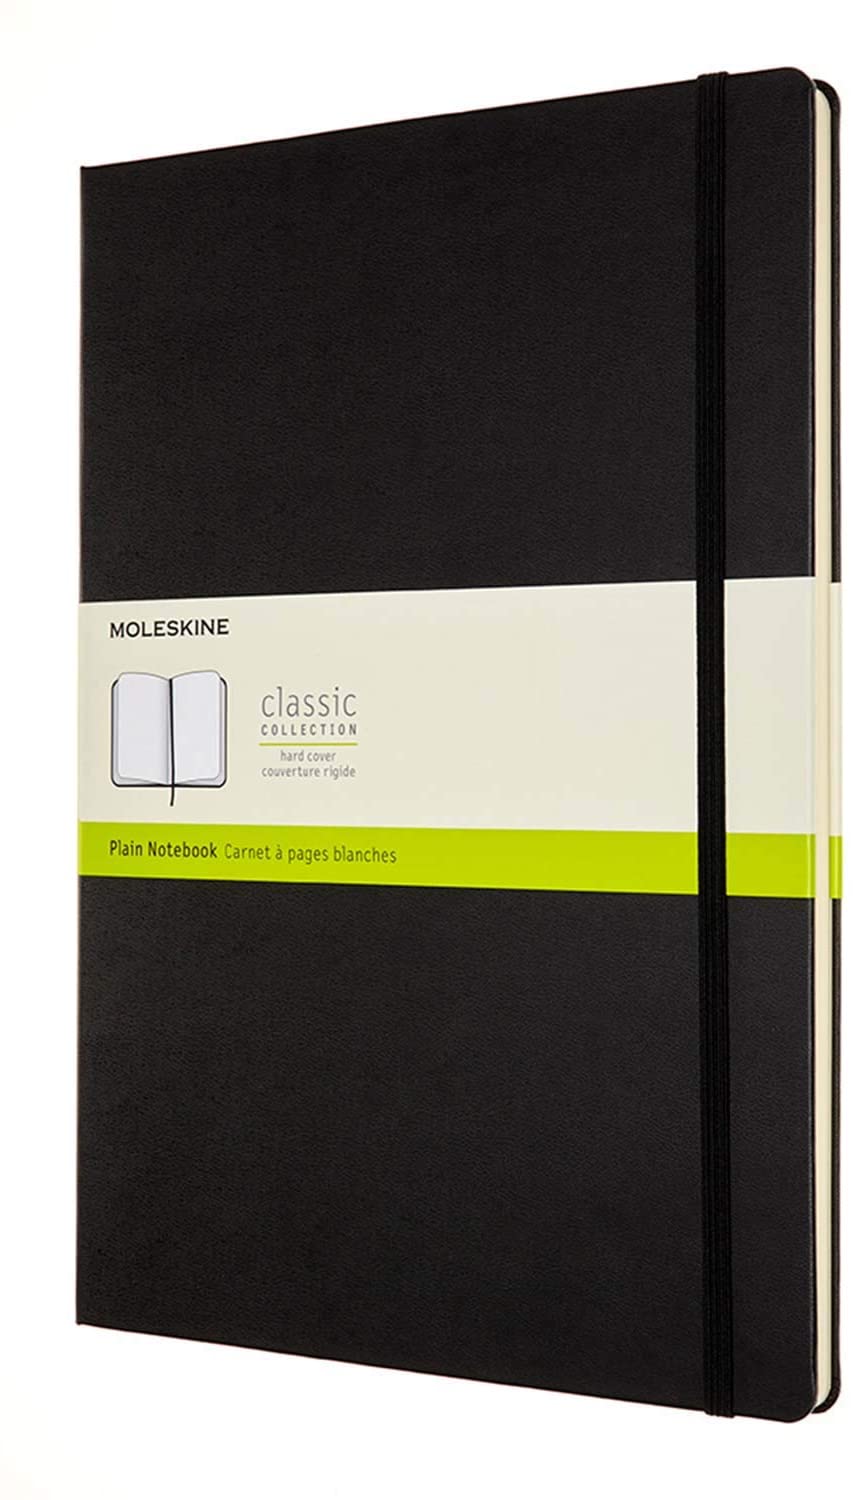 Moleskine Classic Notebook con Pagine Bianche, Taccuino con Copertina Rigida e Chiusura ad Elastico, Dimensione A4 21 x 29.7 cm, Nero, 192 Pagine